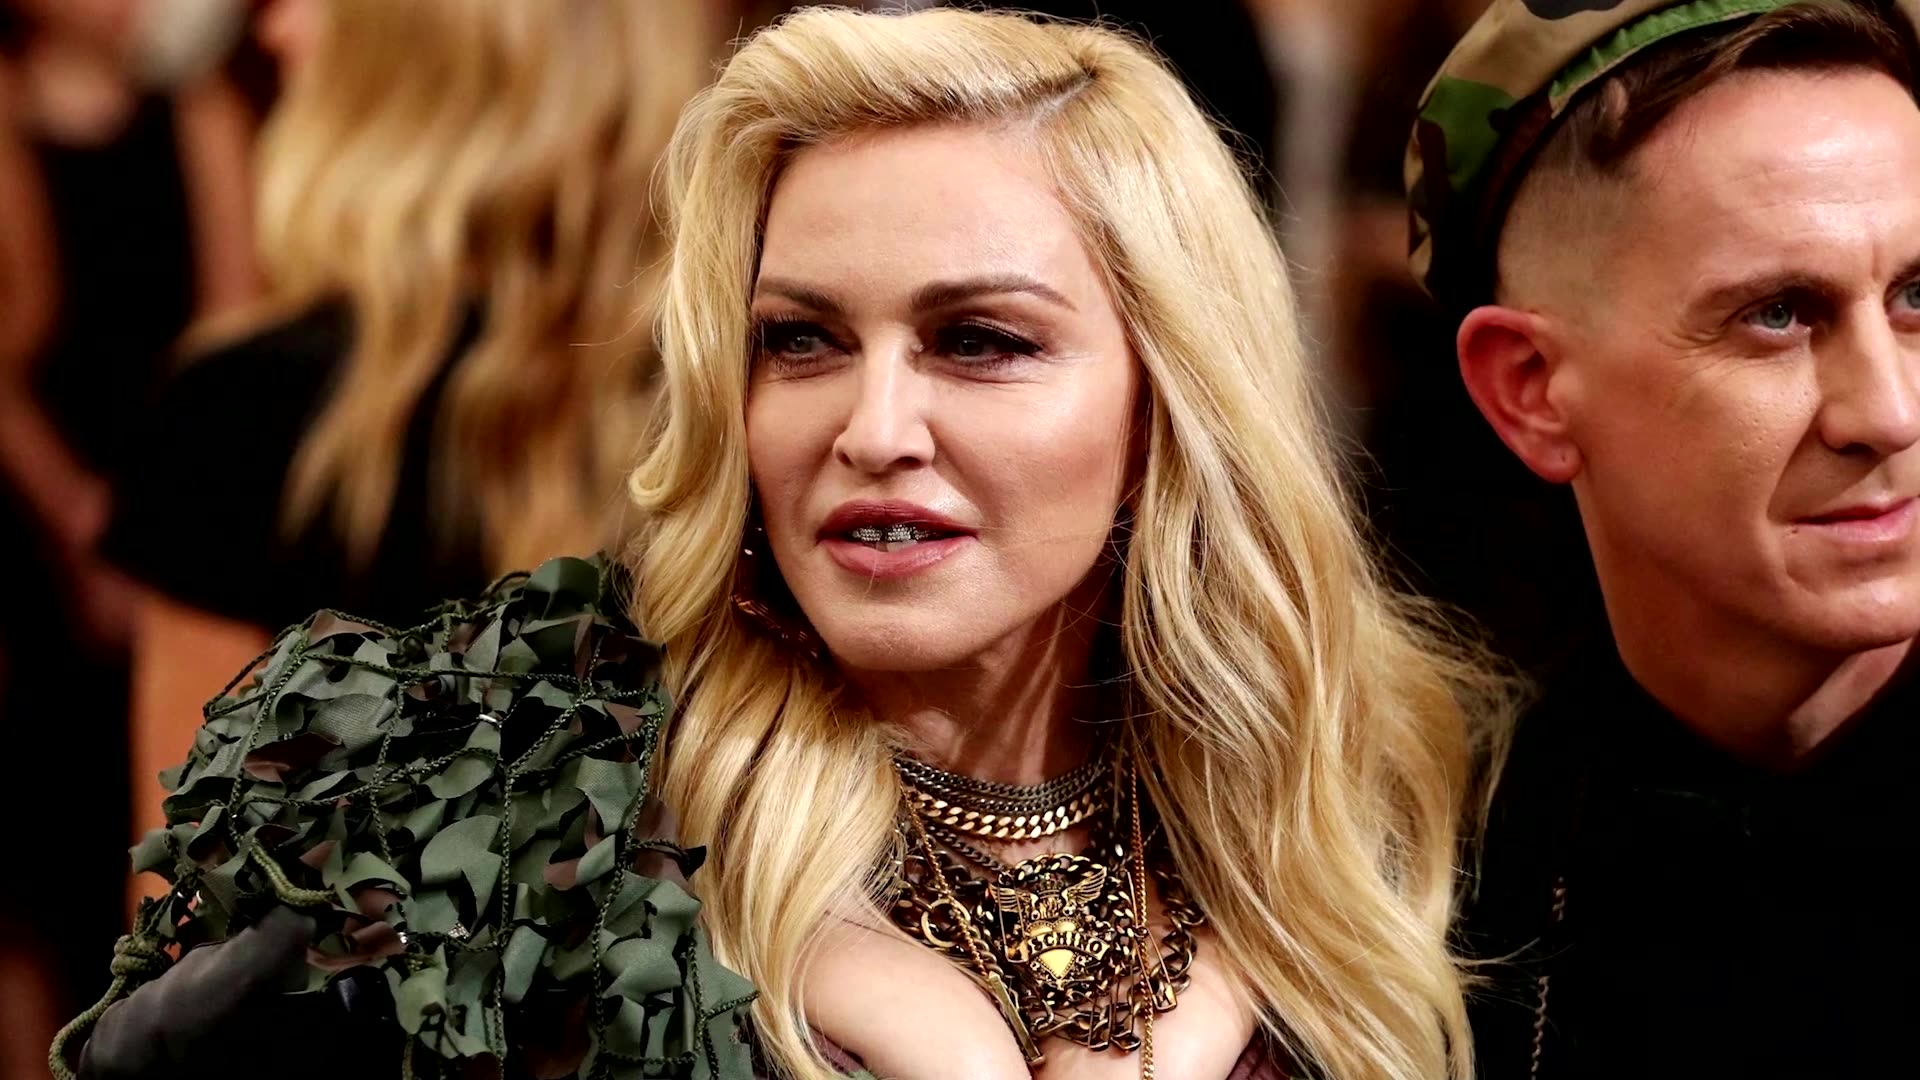 Madonna postpones tour after hospitalization